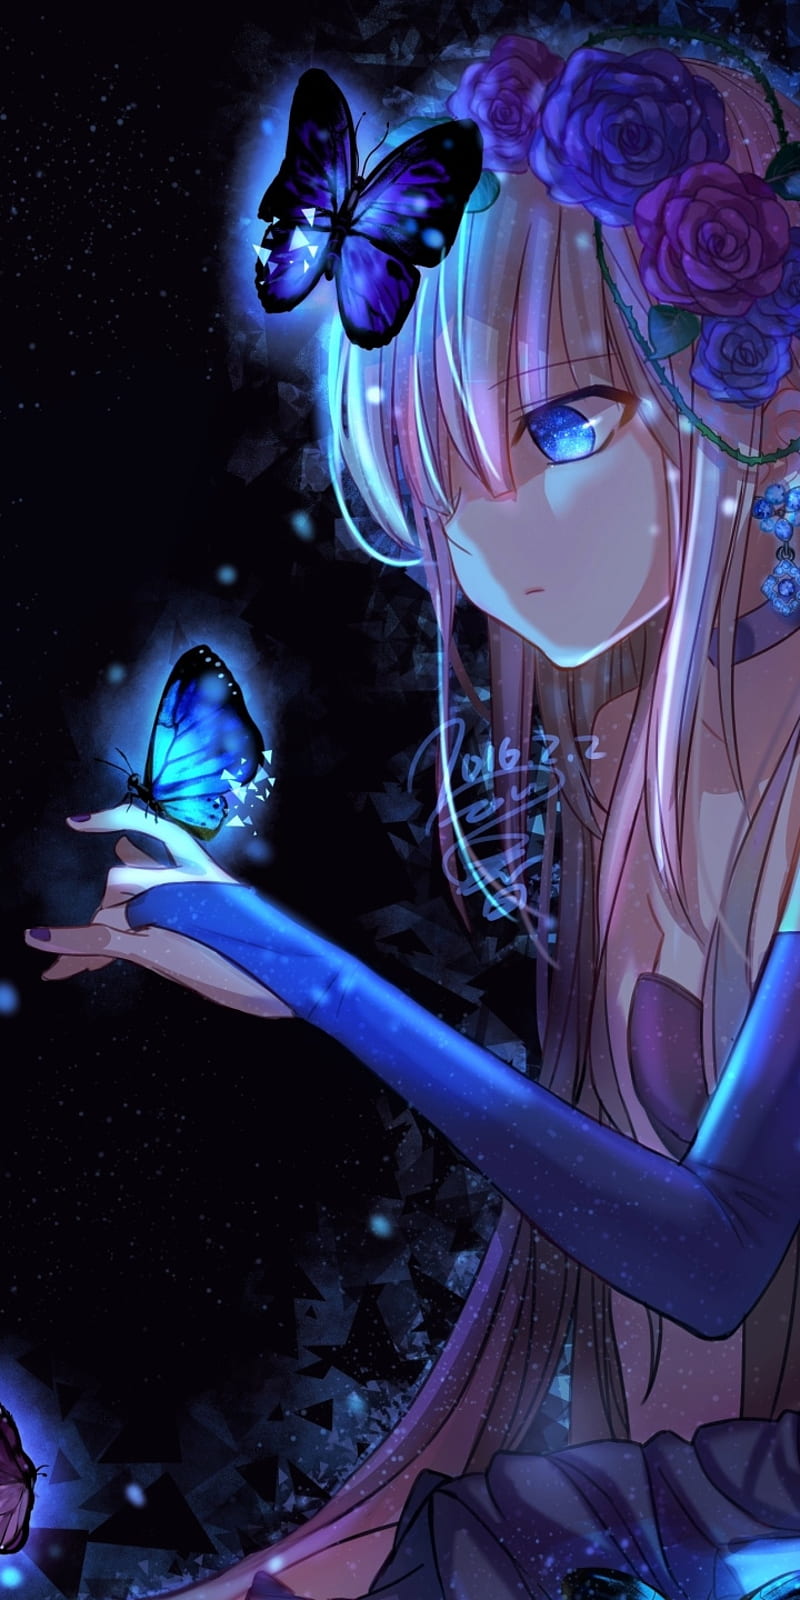 Anime Girl Butterfly-Anime design, HD wallpaper | Peakpx